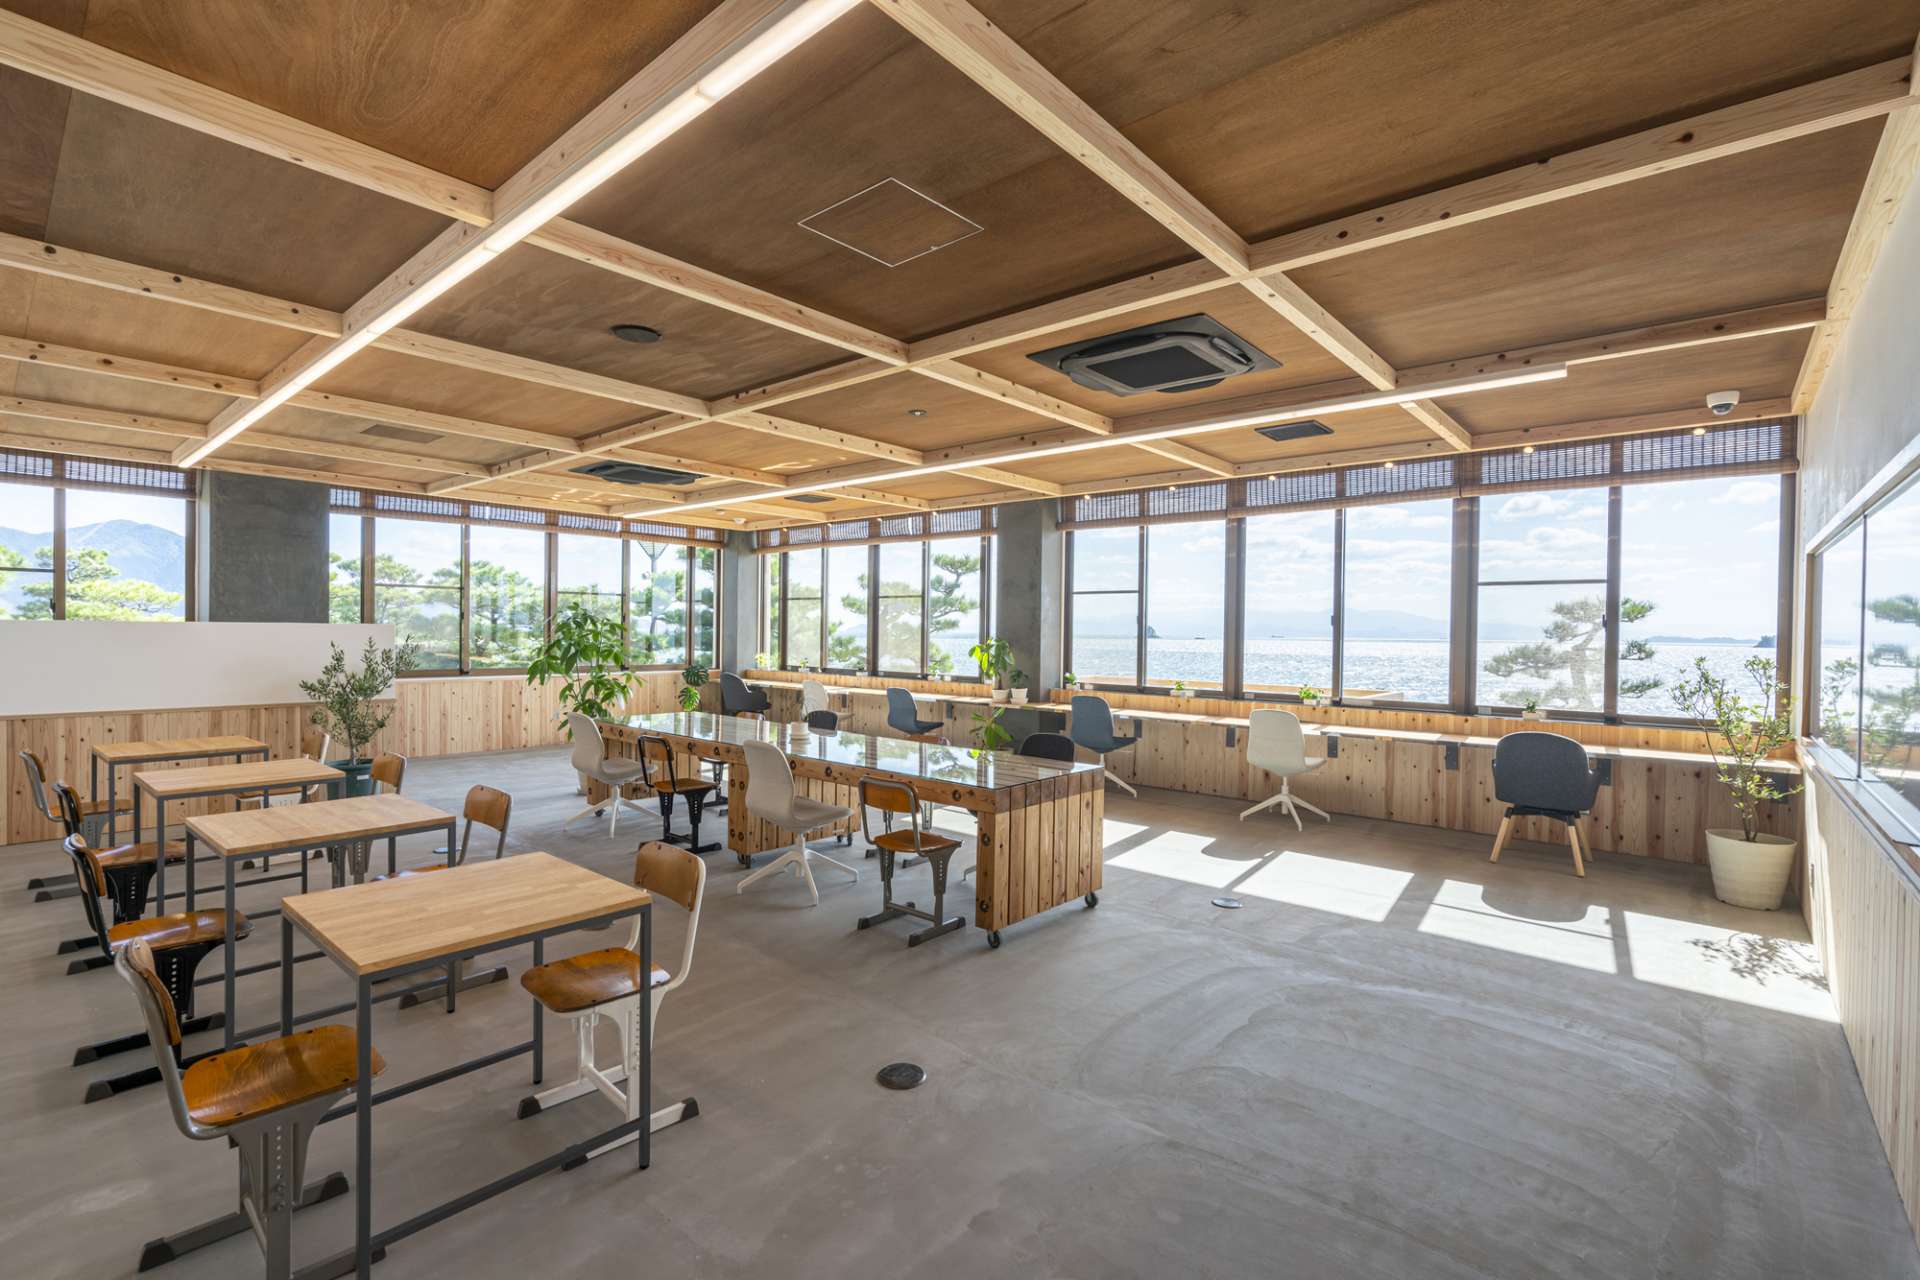 クリニックの待合室空間をより豊かにおしゃれに設計、デザインする広島の設計事務所はasazu design office